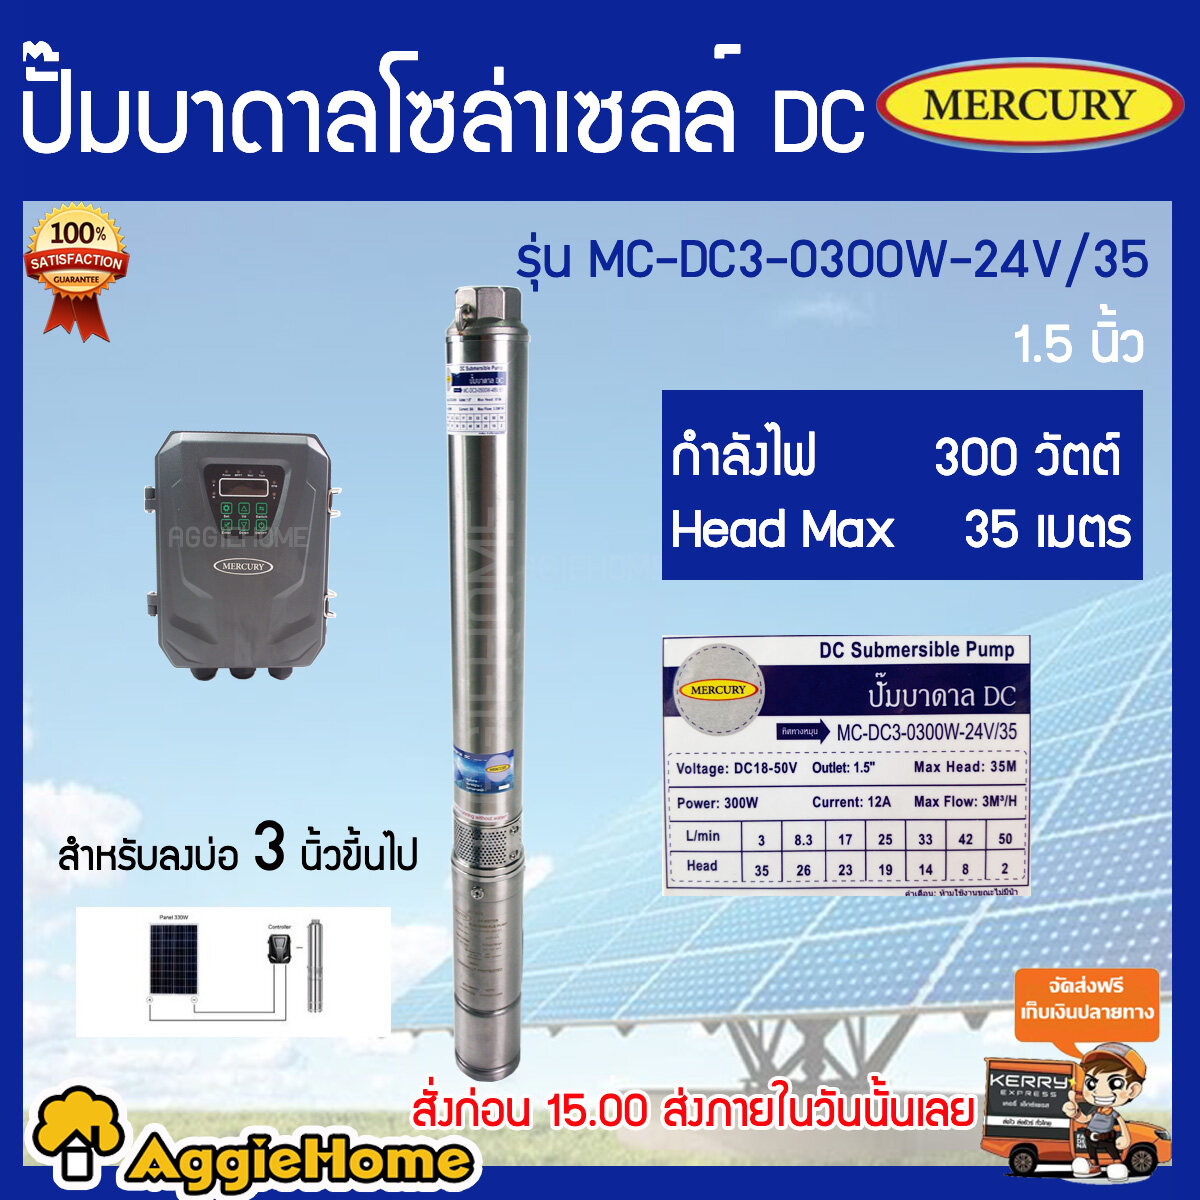 MERCURY ปั้มบาดาล รุ่น MC-DC3-0300W-24V/35